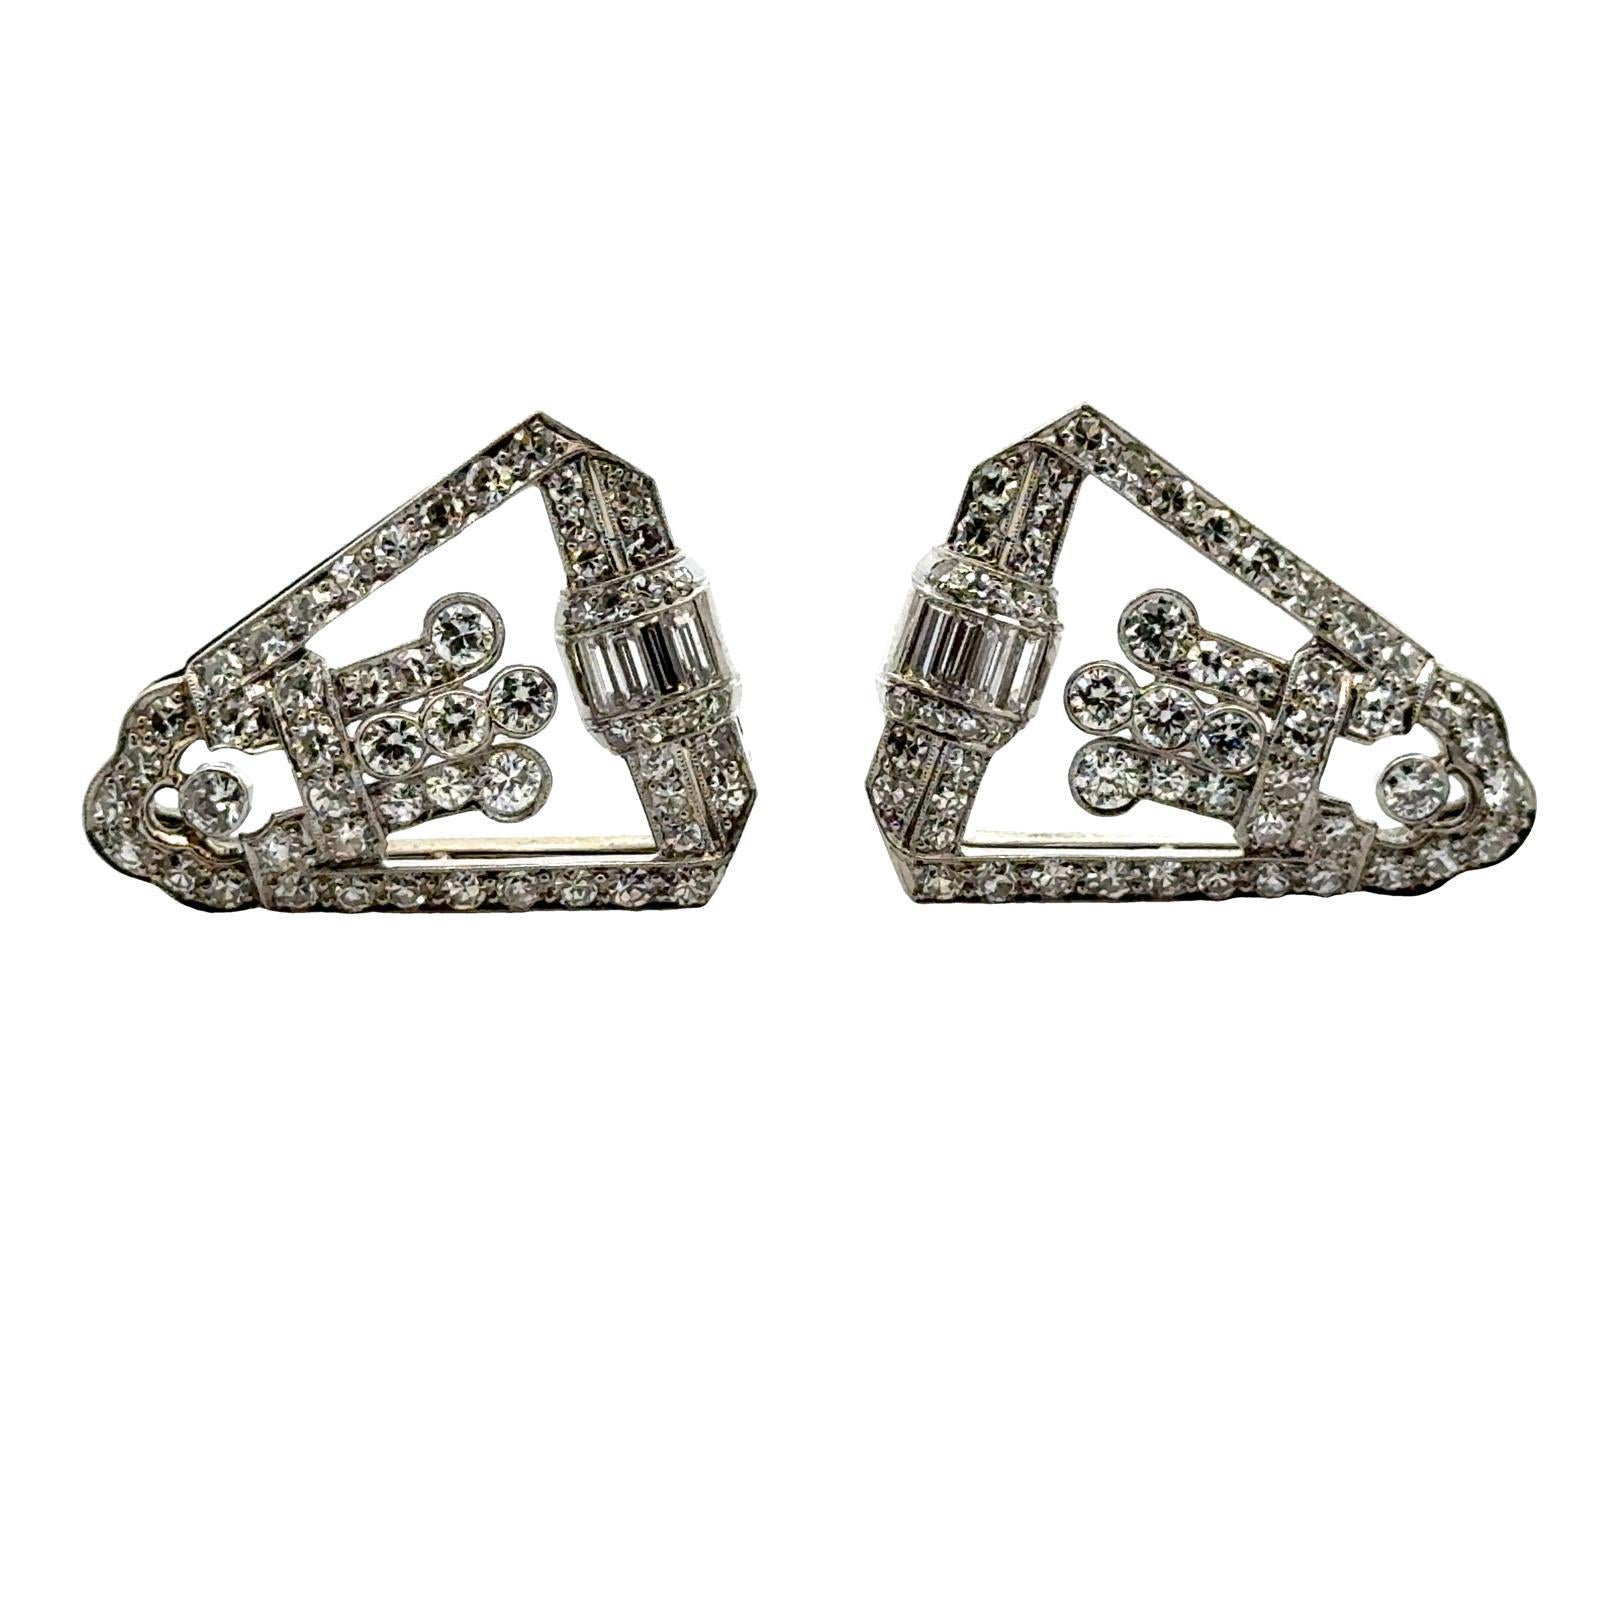 Diese Art-Déco-Diamantclips verkörpern die Raffinesse der wilden 1920er Jahre. Die aus 18 Karat Weißgold gefertigten Clips sind mit schillernden Diamanten im Baguetteschliff, Rundschliff und Einzelschliff verziert, die in einem für die Art-Déco-Ära